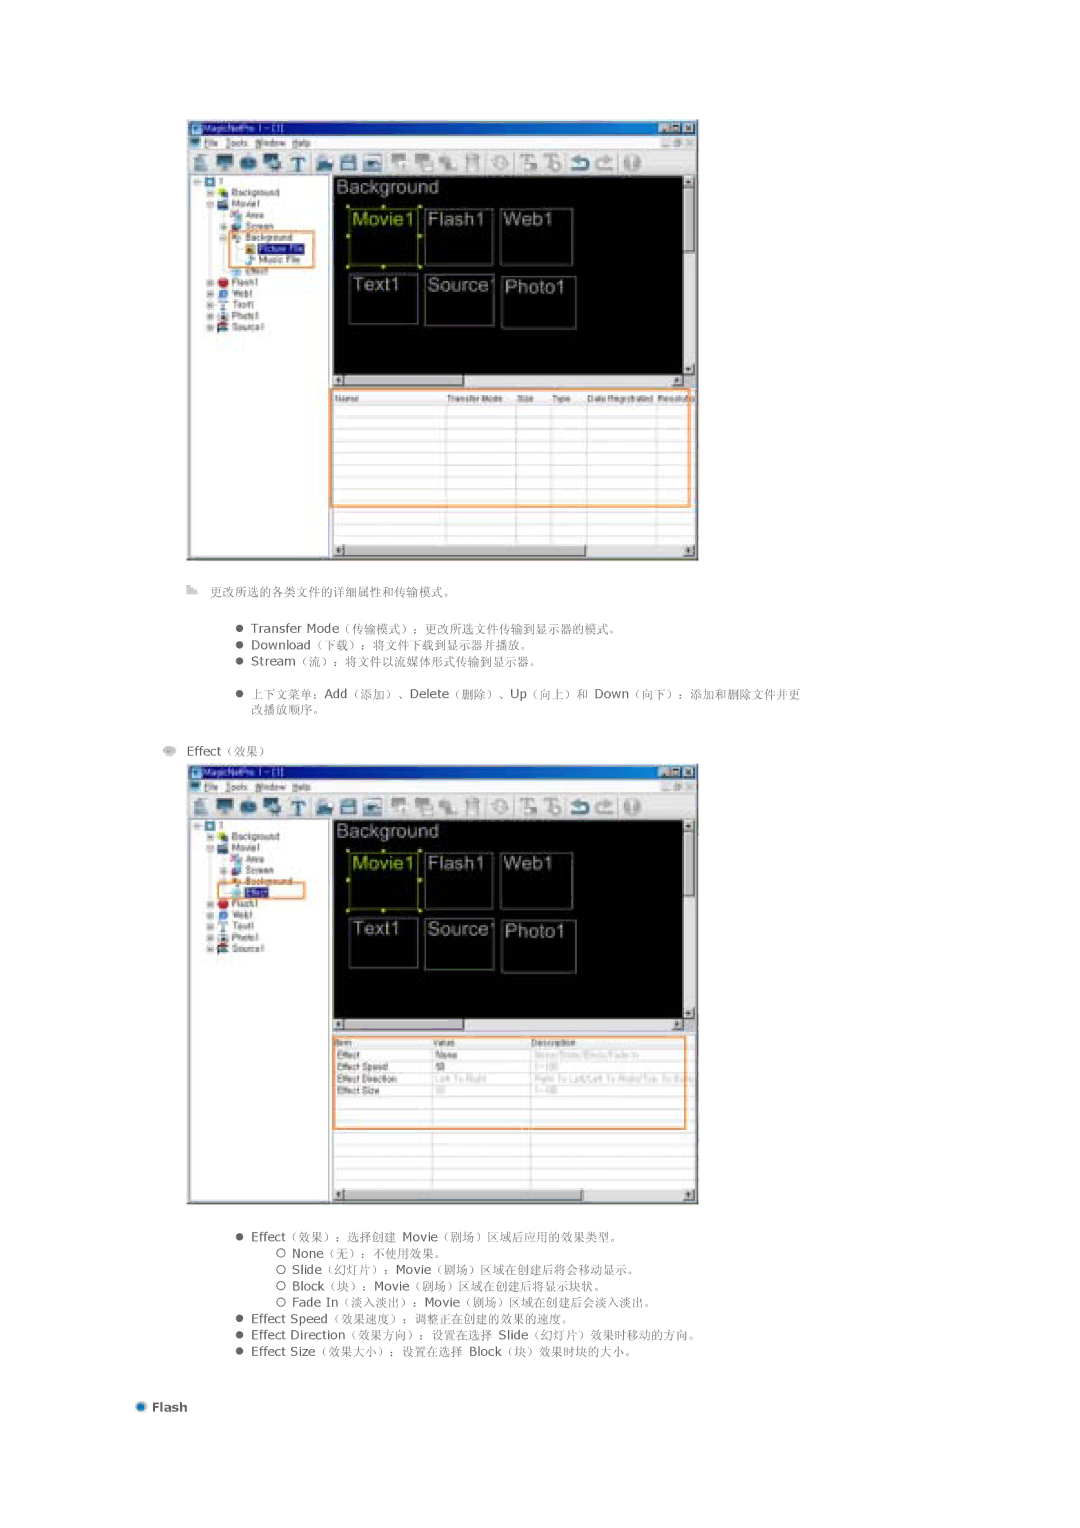 Samsung LS57BPTNS/EDC, LS57BPTNB/EDC manual Flash 